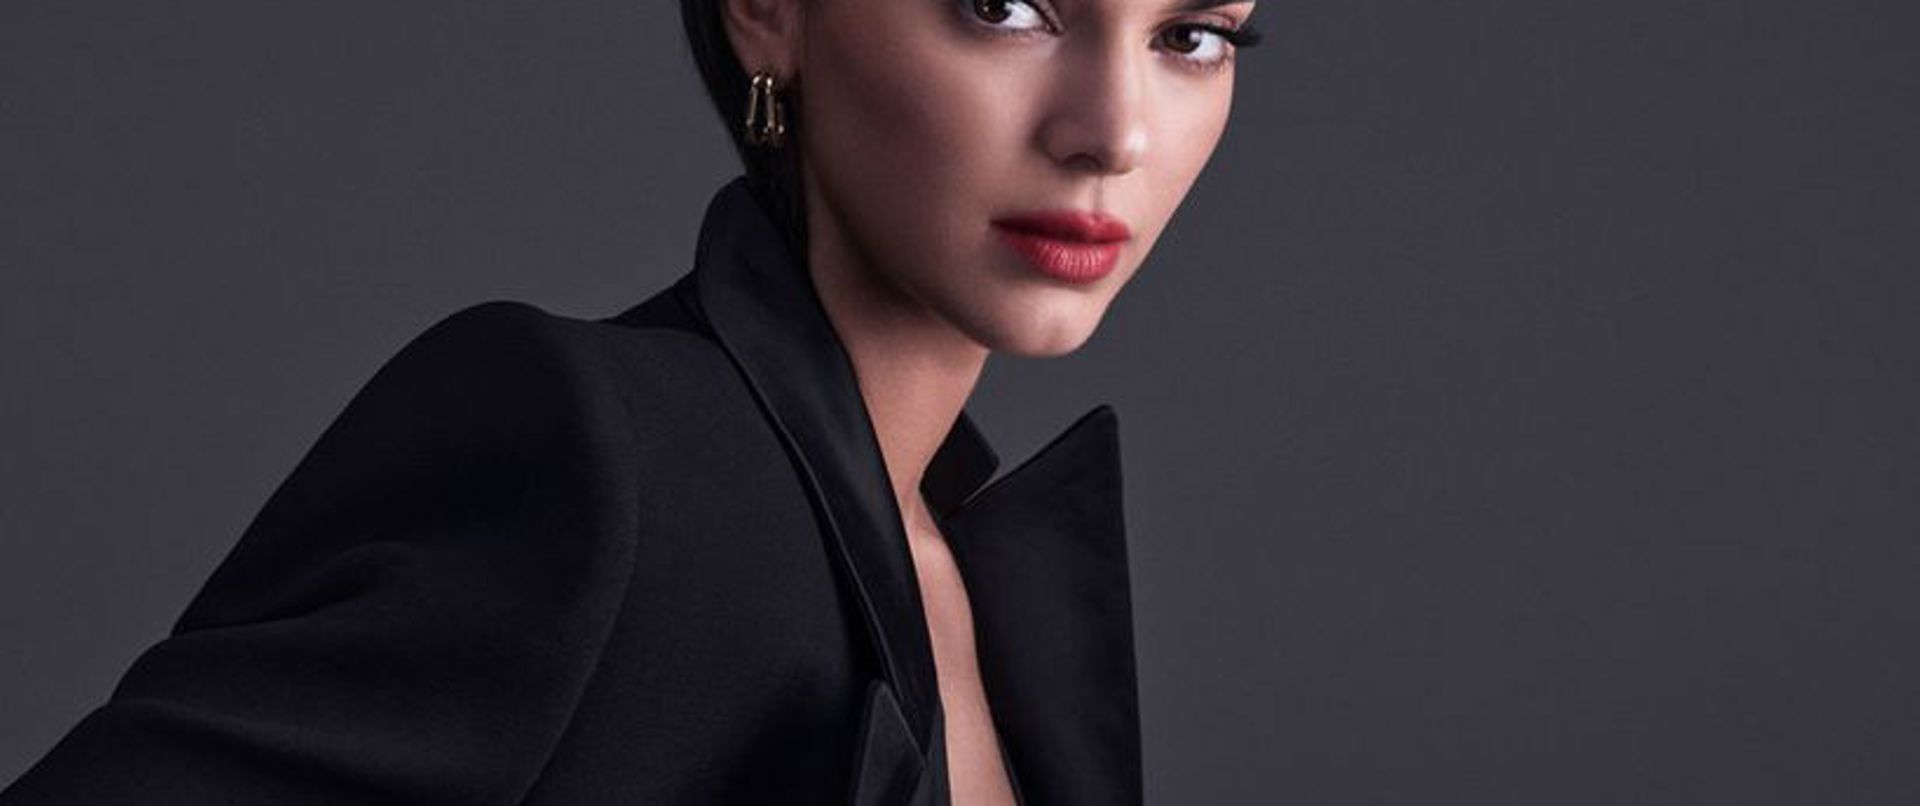 L’Oréal Paris Makyajın Yeni Elçisi: Kendall Jenner!